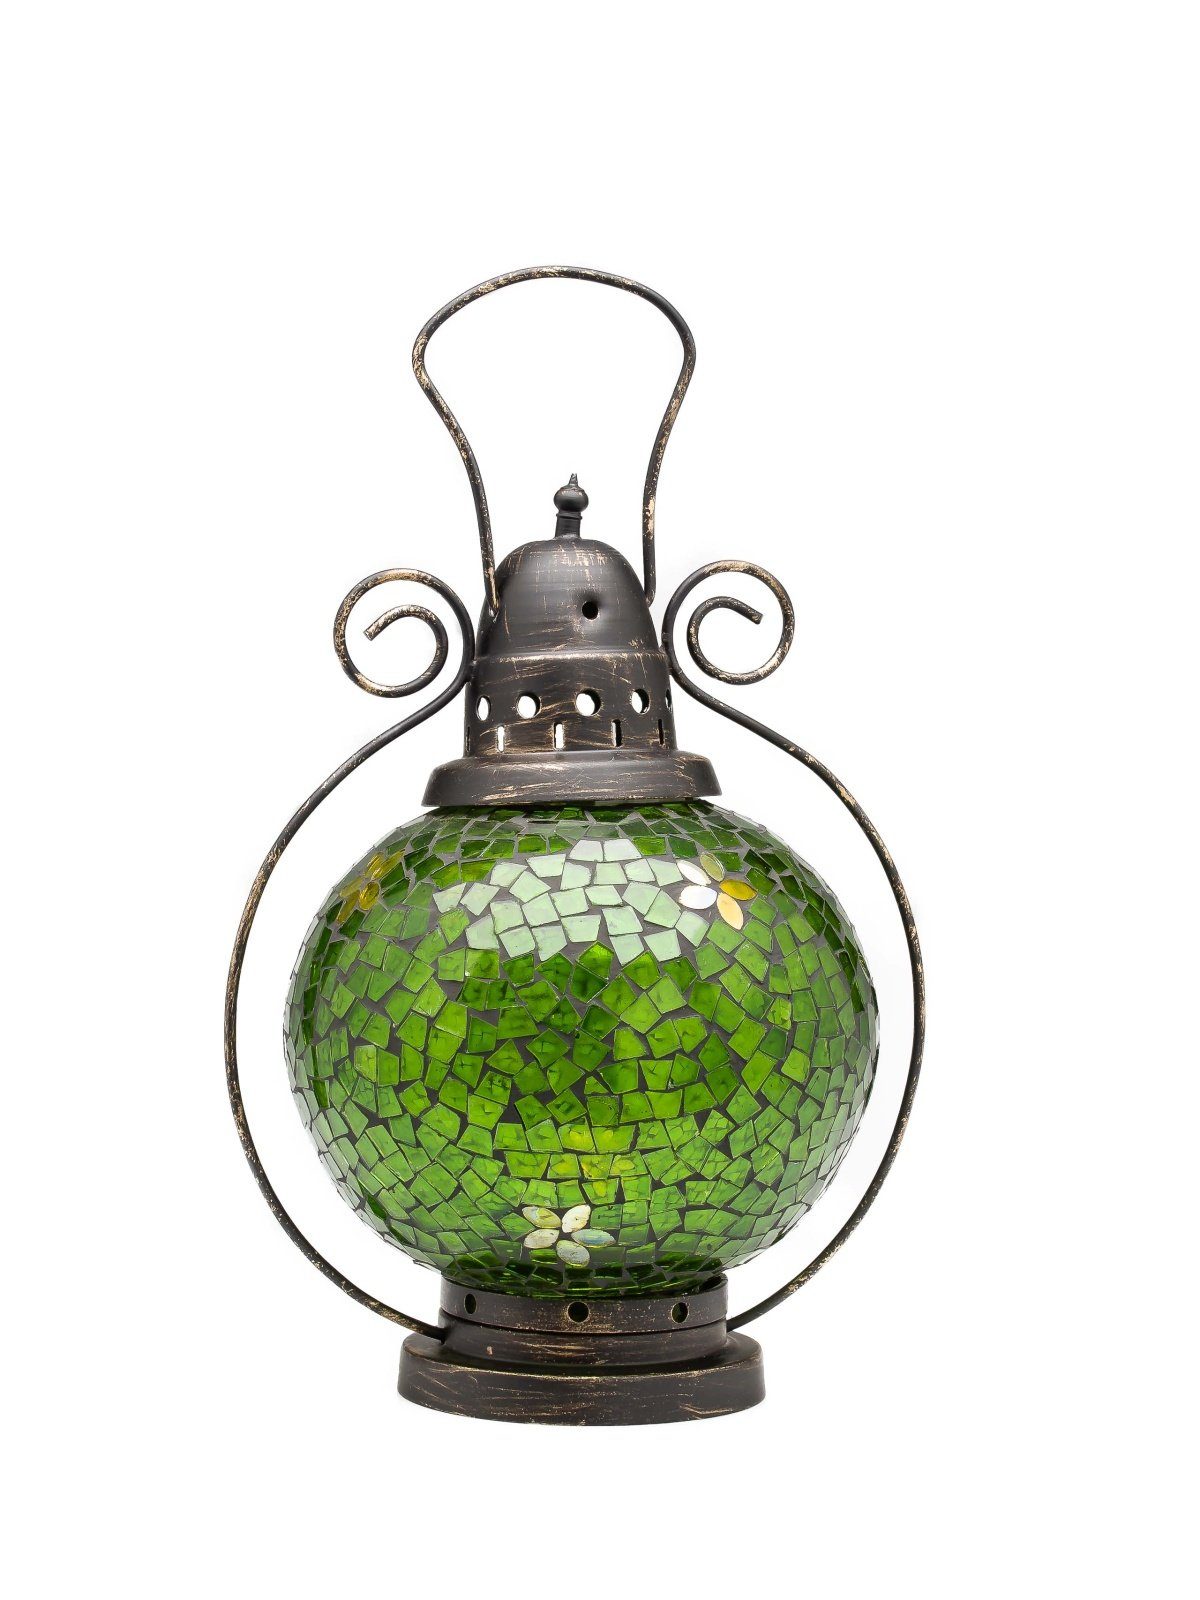 Aubaho Windlicht Windlicht Laterne Lampe Teelicht Garten Terasse Haus Glas Buntglas grü | Windlichter